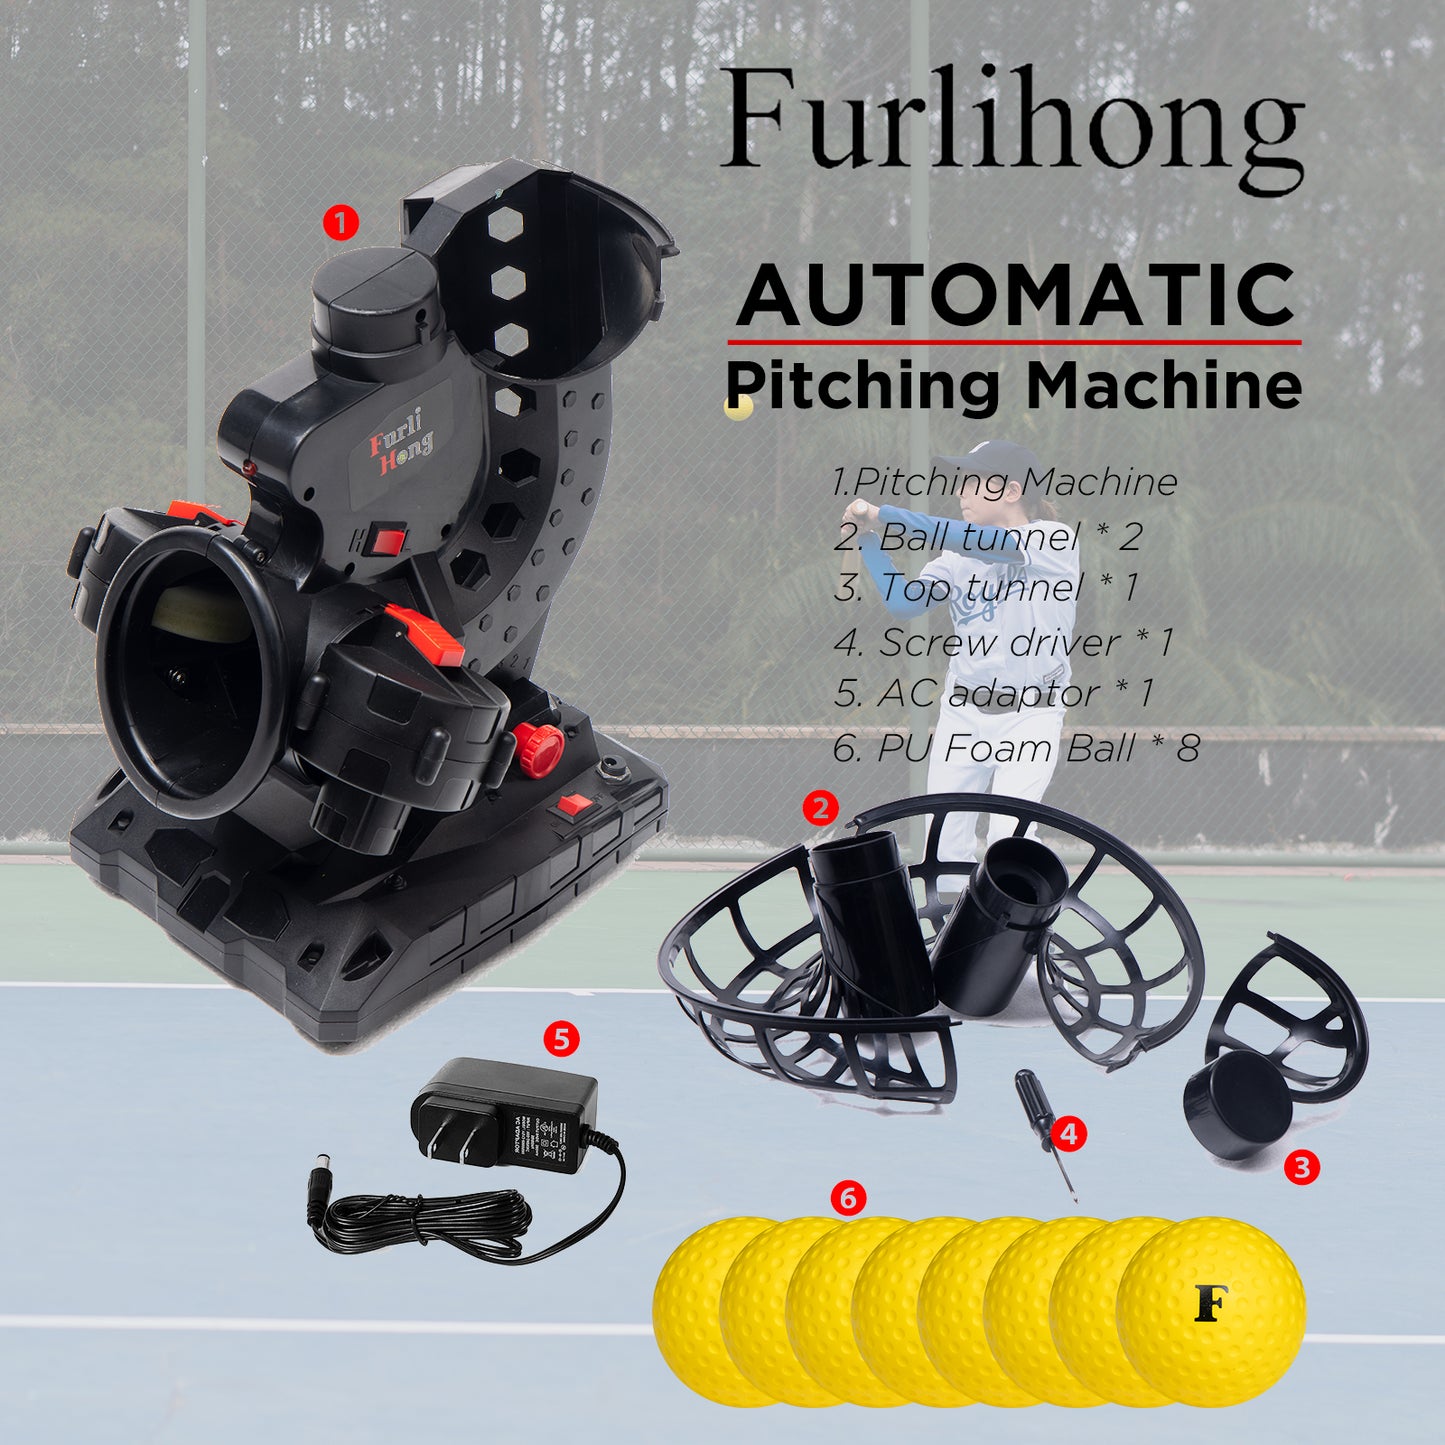 Furlihong 3801BH Electronic Baseball Pitching Machine